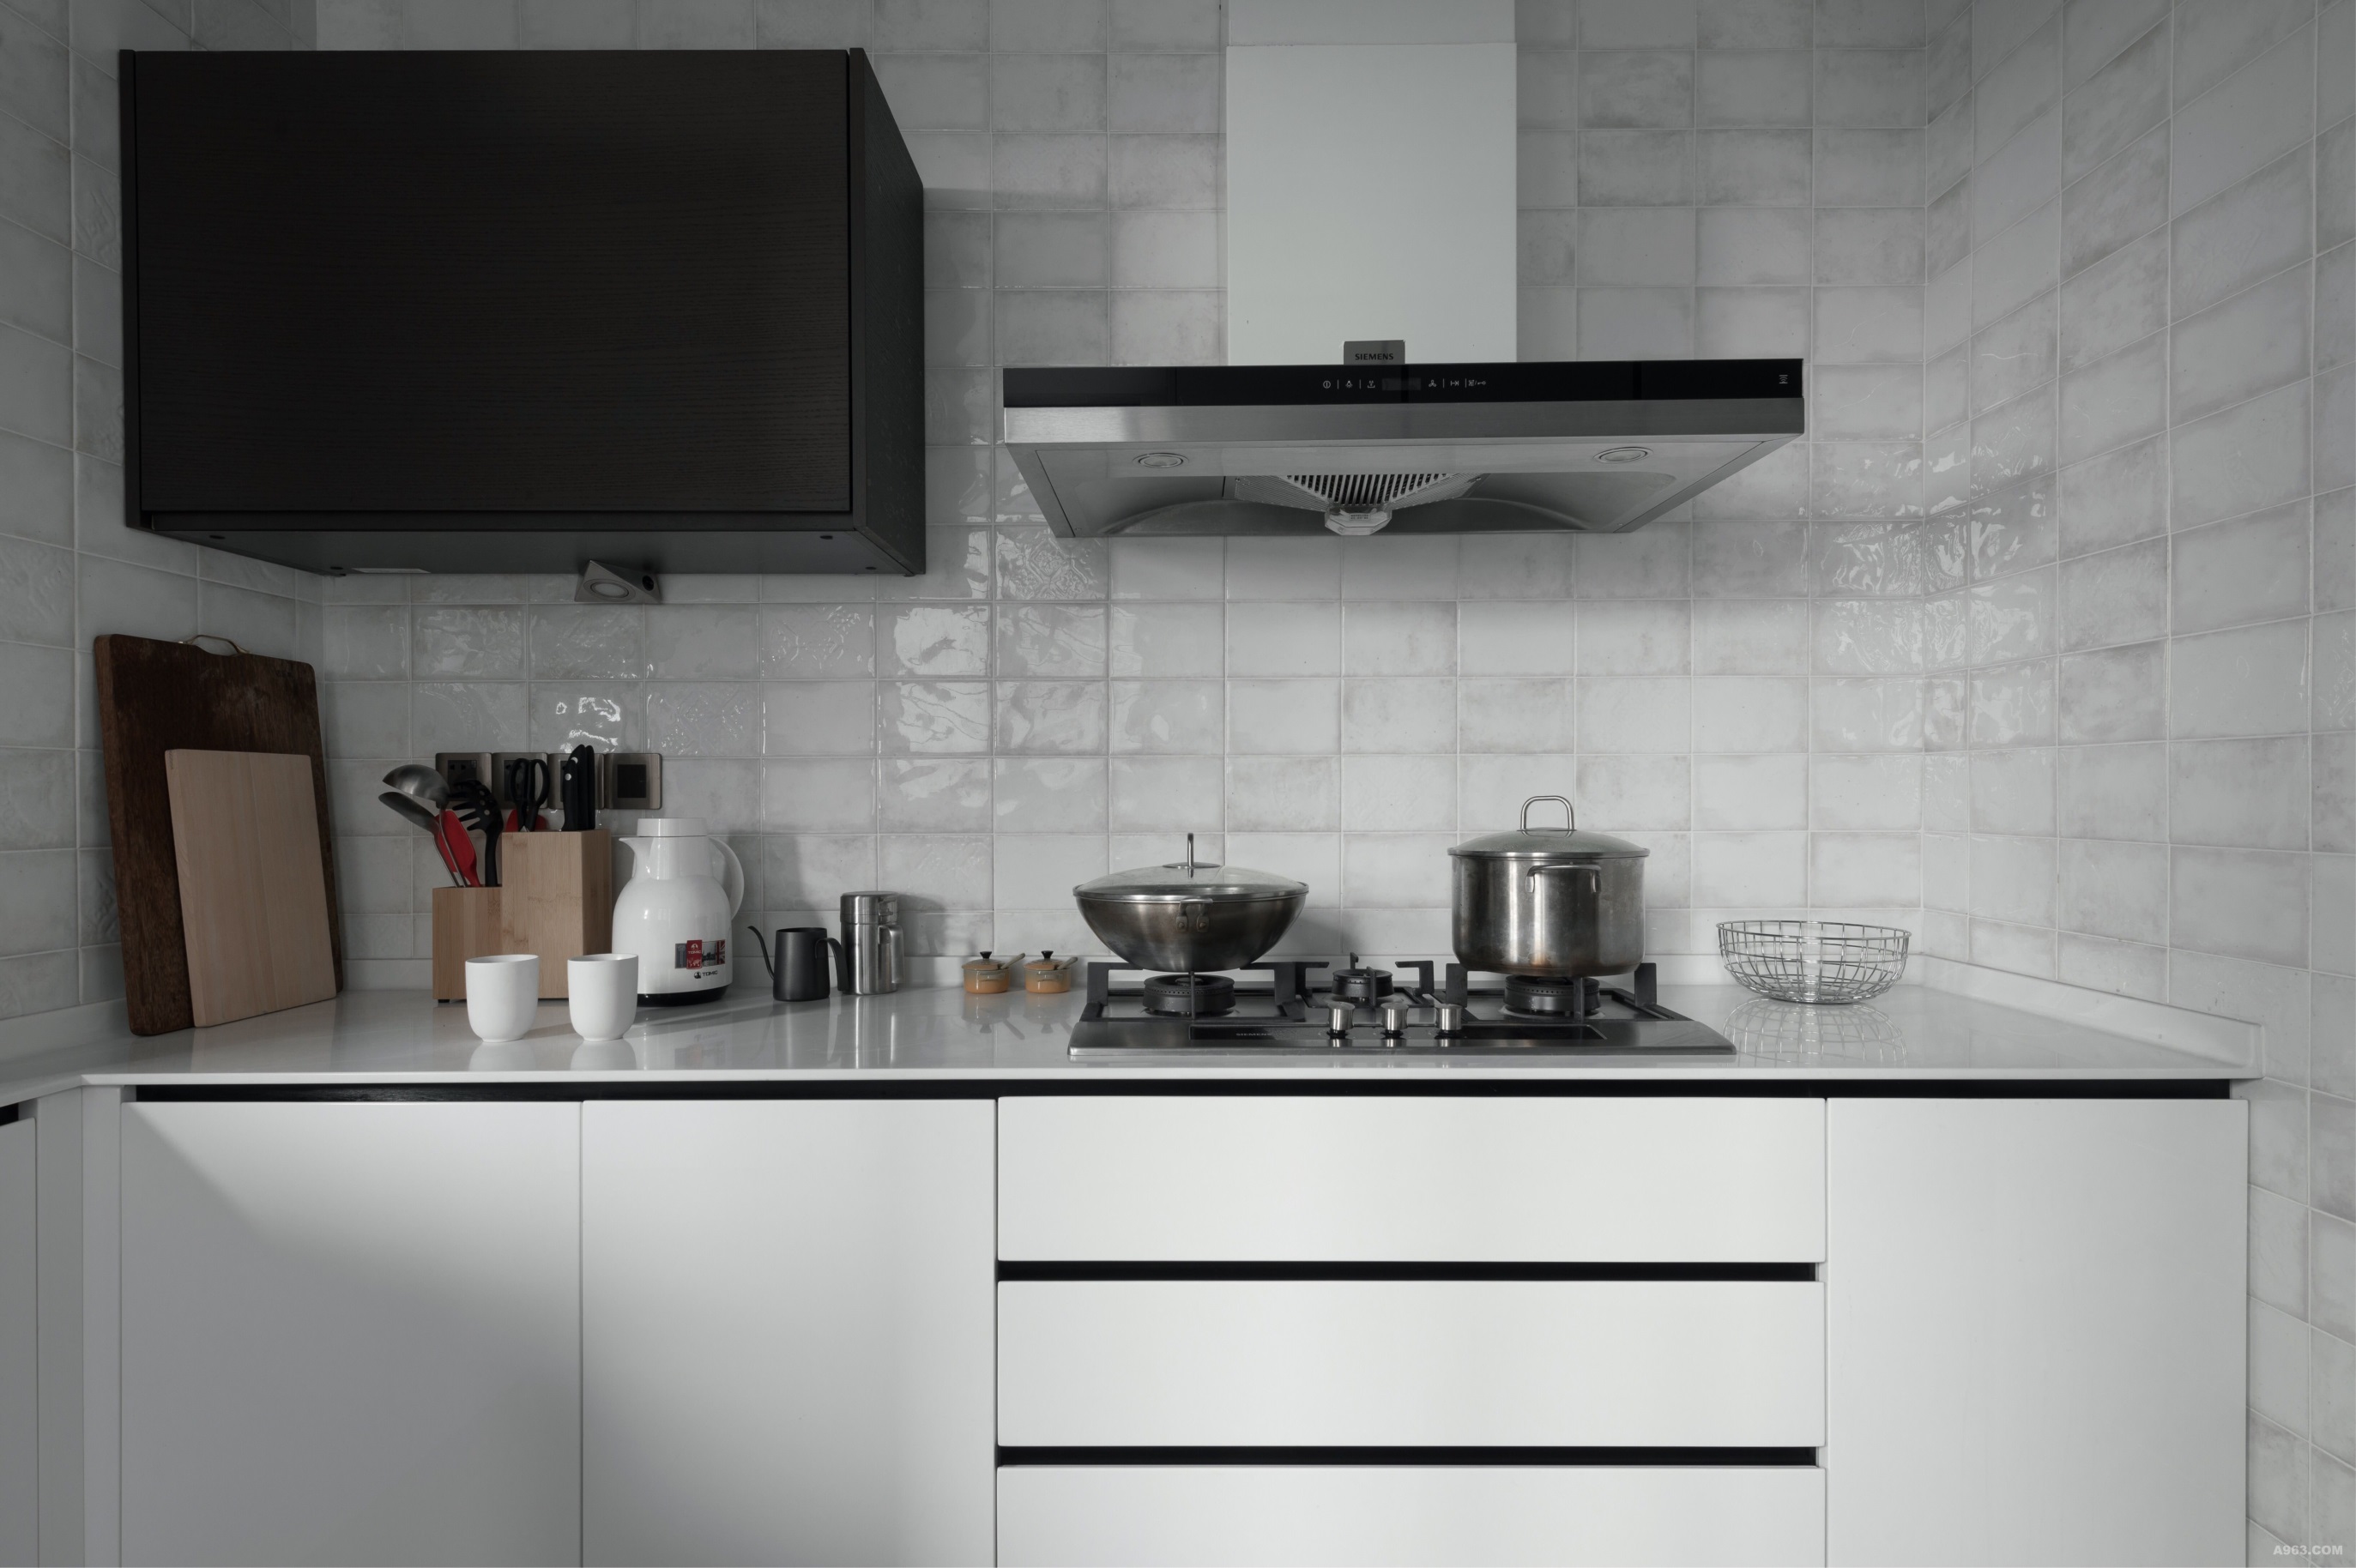 厨房空间整铺白色砖面，让空间延伸性更强，白色橱柜在空间中显得更加别致。